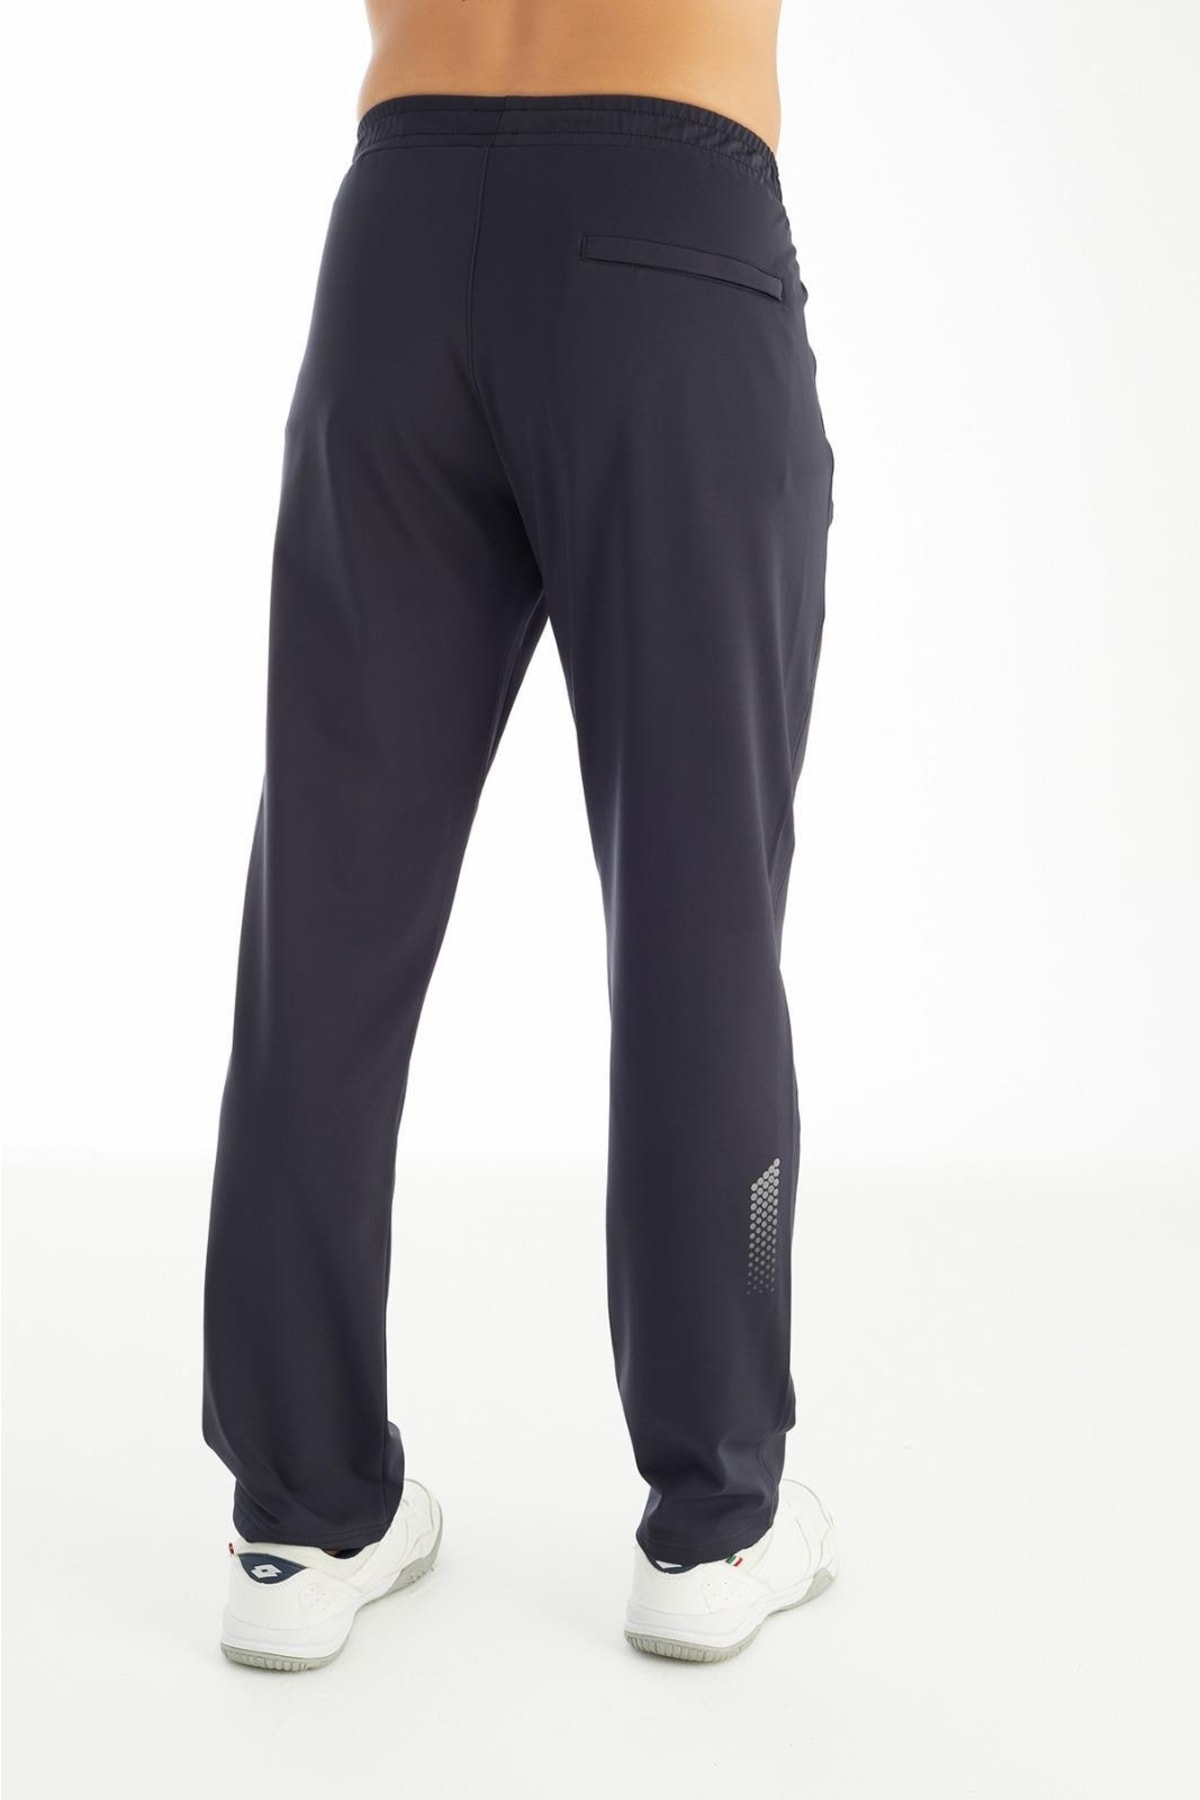 Crozwise Erkek Dalgıç Kumaş Spor Pantolon